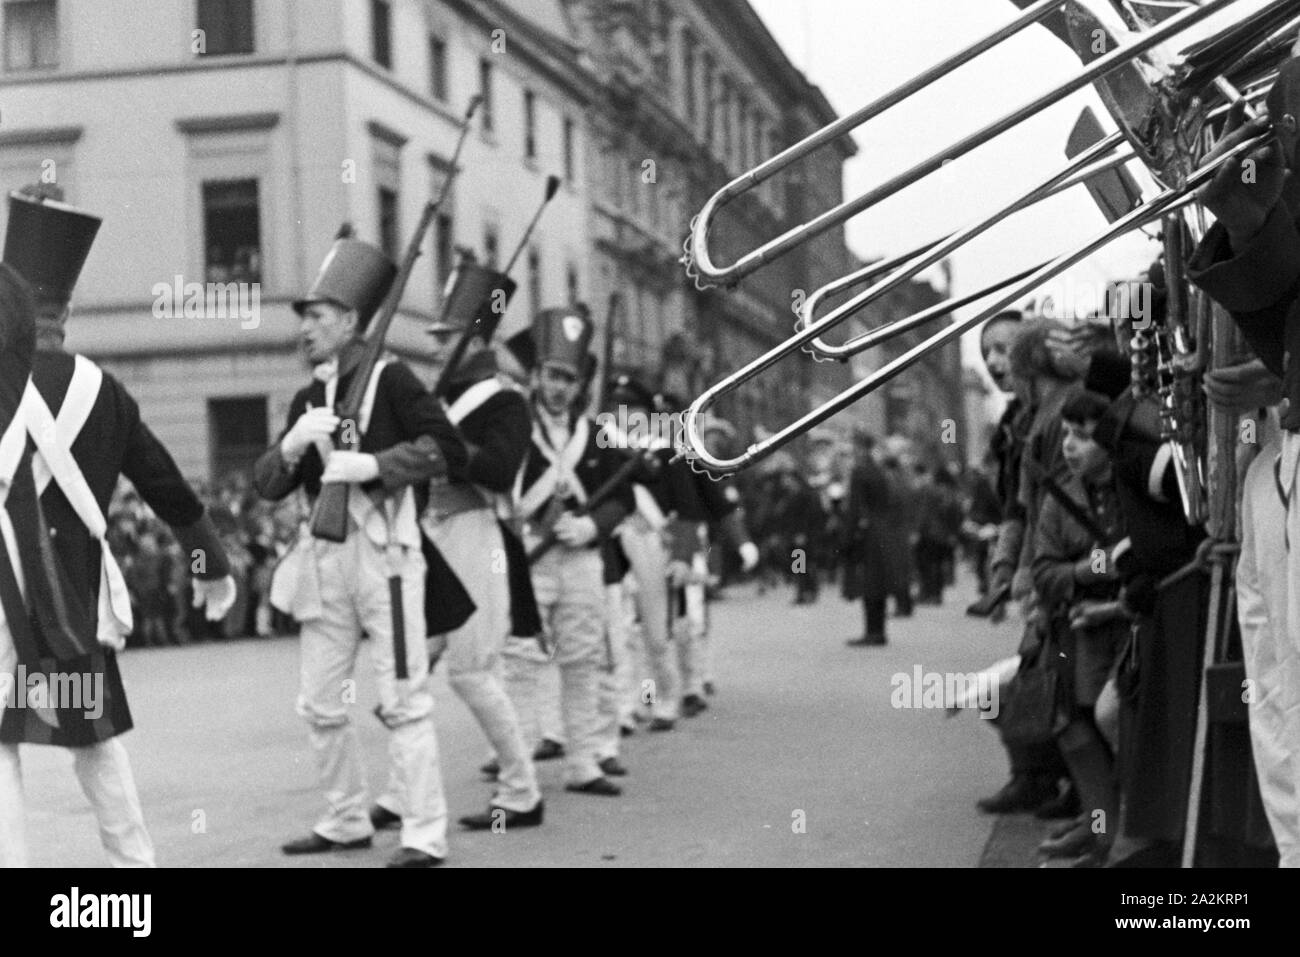 Mitten im Karneval der sessione 1937 a Düsseldorf unter dem motto "Lachendes Volk', Deutschland 1930er Jahre. In mezzo al carnevale di Duesseldorf con lo slogan "Lachendes Volk', Germania 1930s. Foto Stock